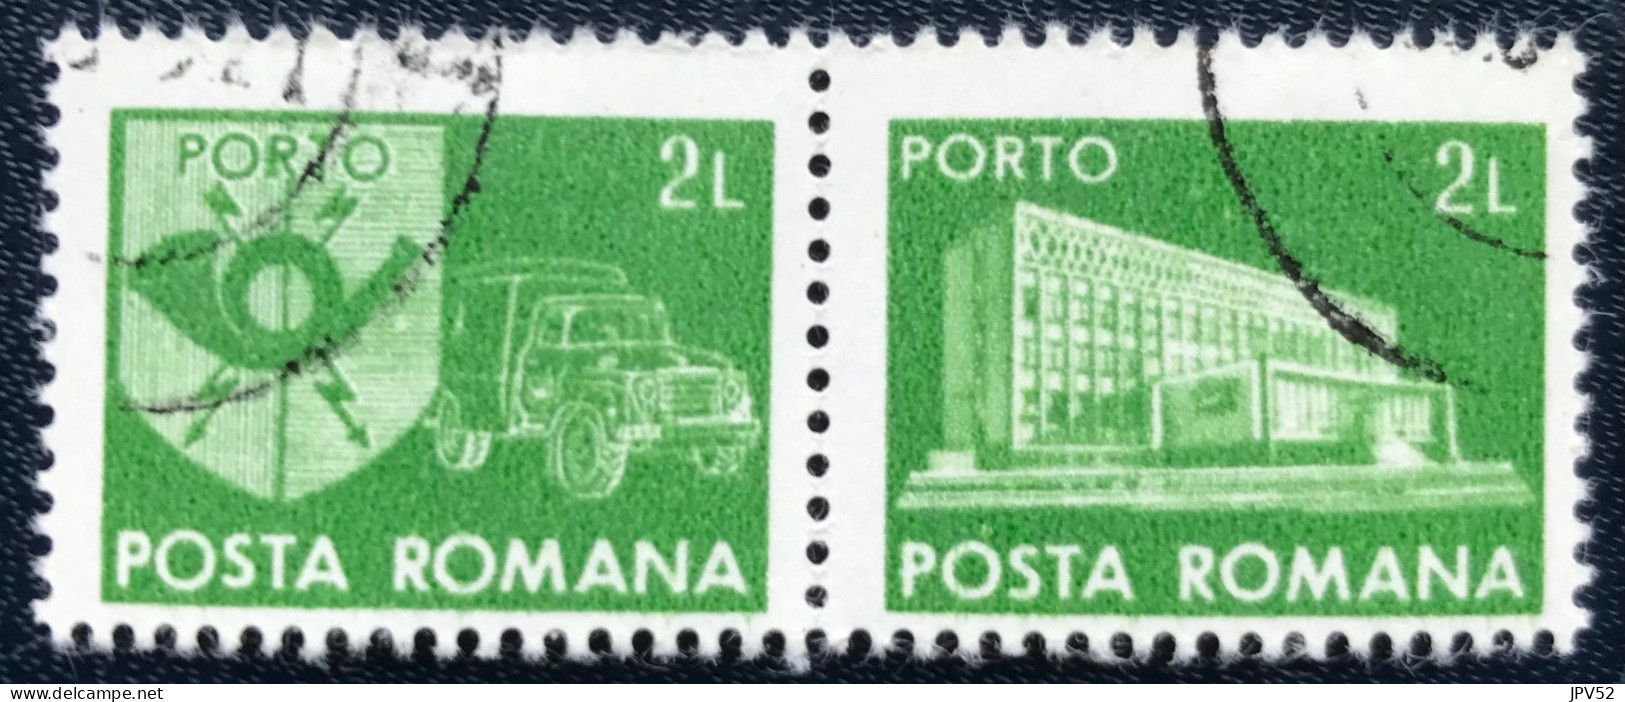 Romana - Roemenië - C14/53 - 1982 - (°)used - Michel 128 - Postkantoor & Postembleem & Postvoertuig - Portomarken